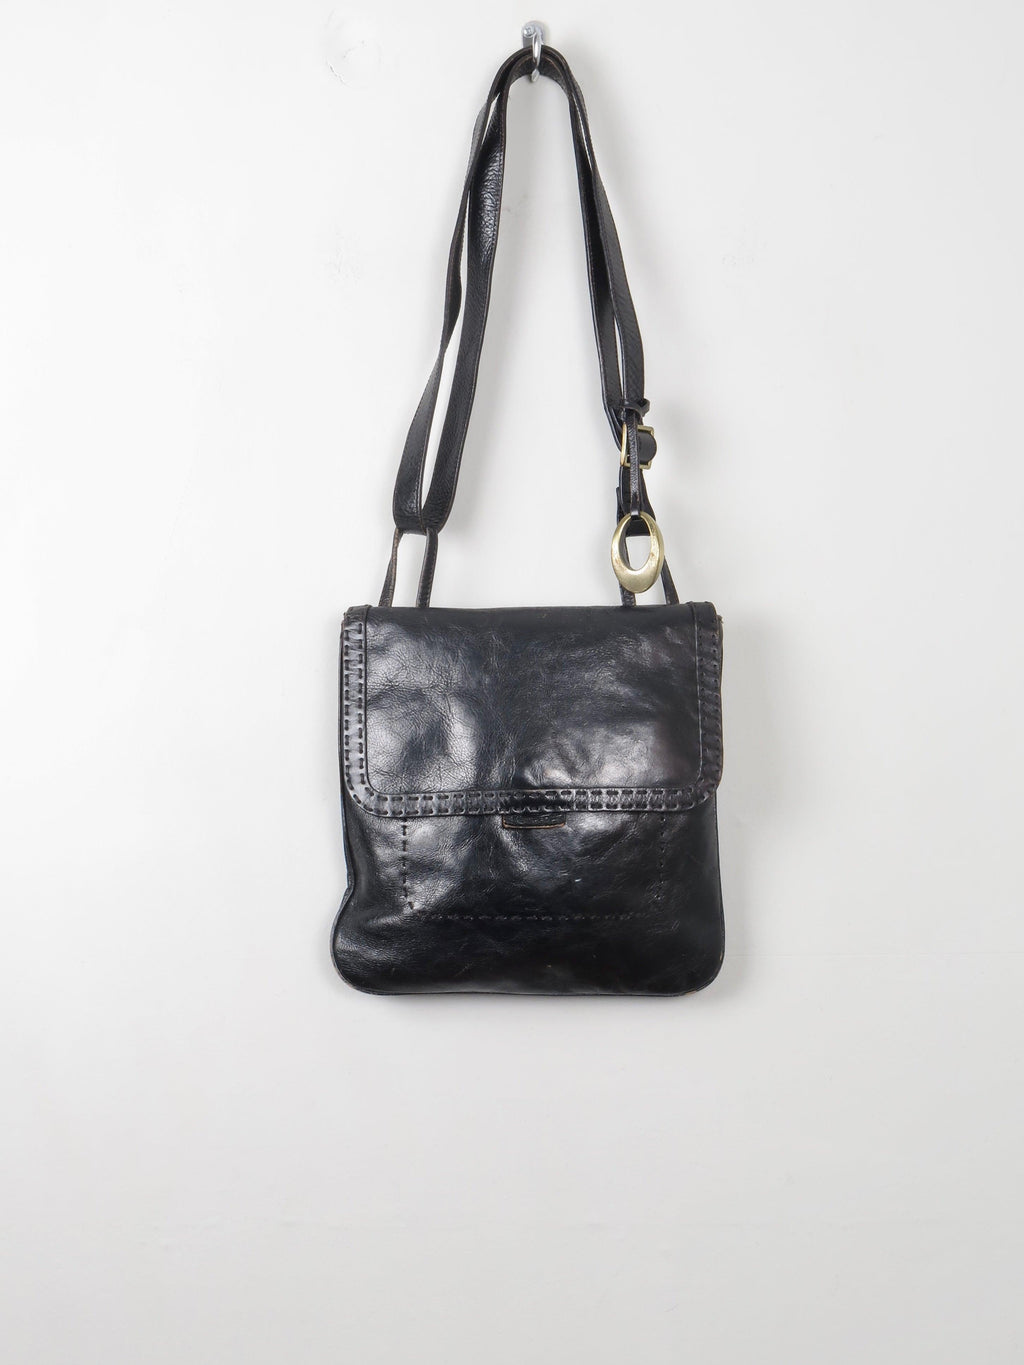 Women's Vintage Black Leather Bag - The Harlequin